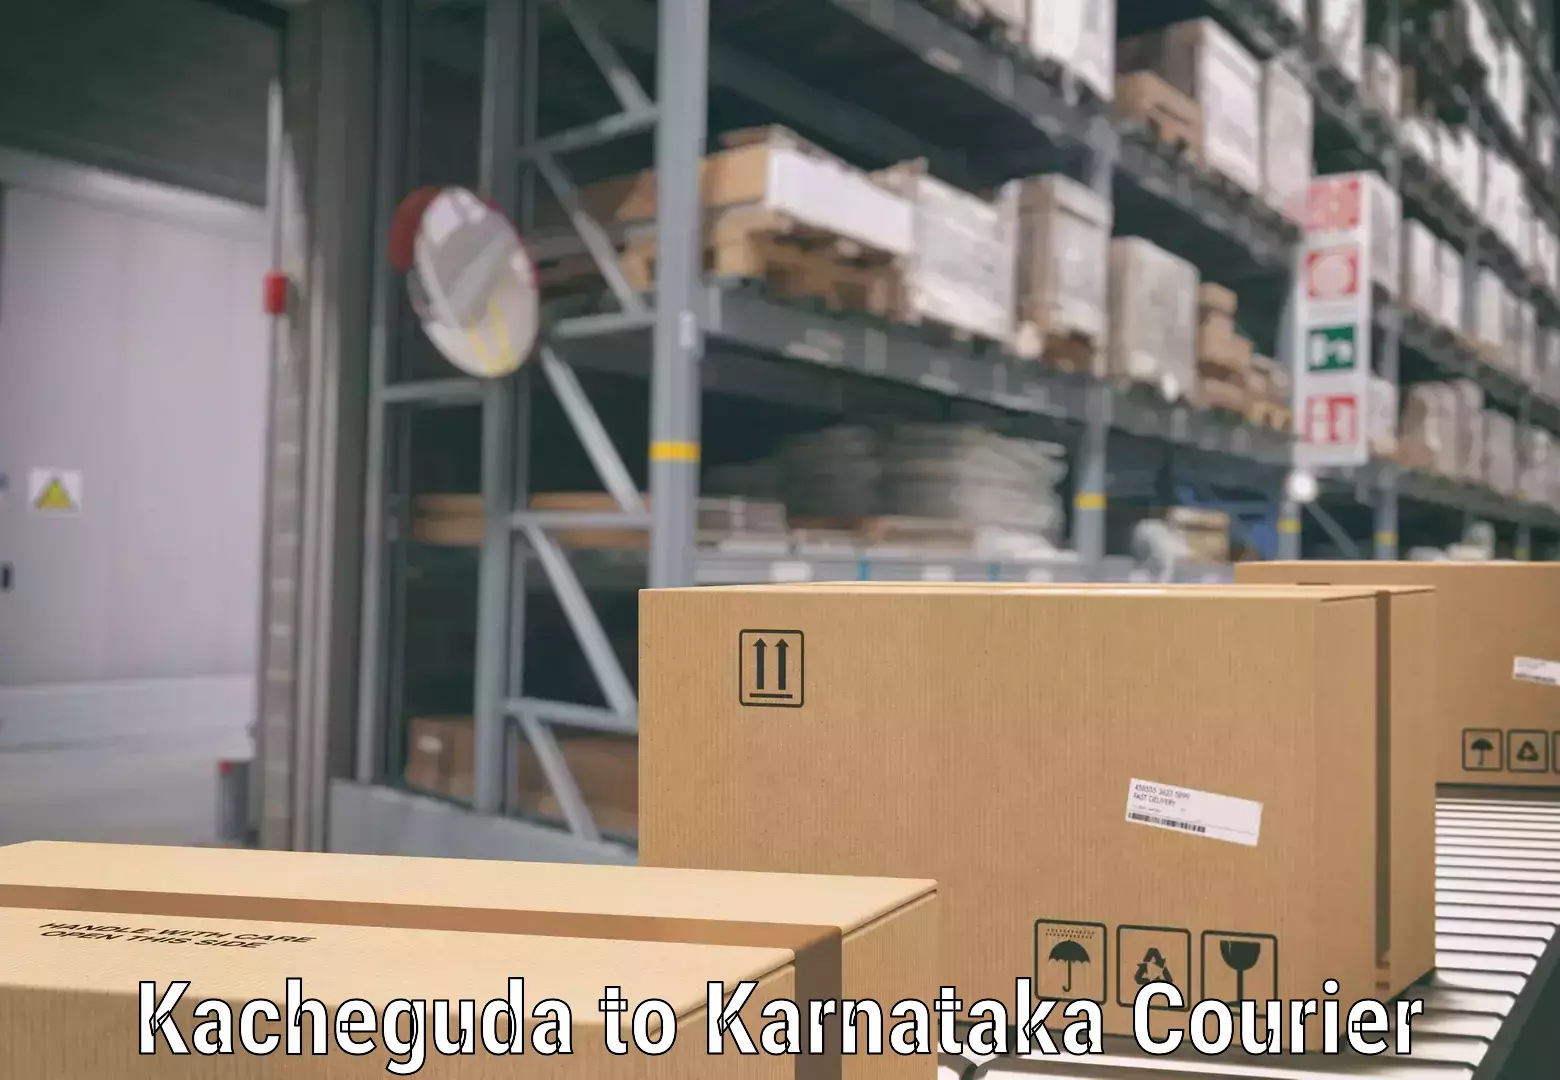 Baggage transport management Kacheguda to Karnataka